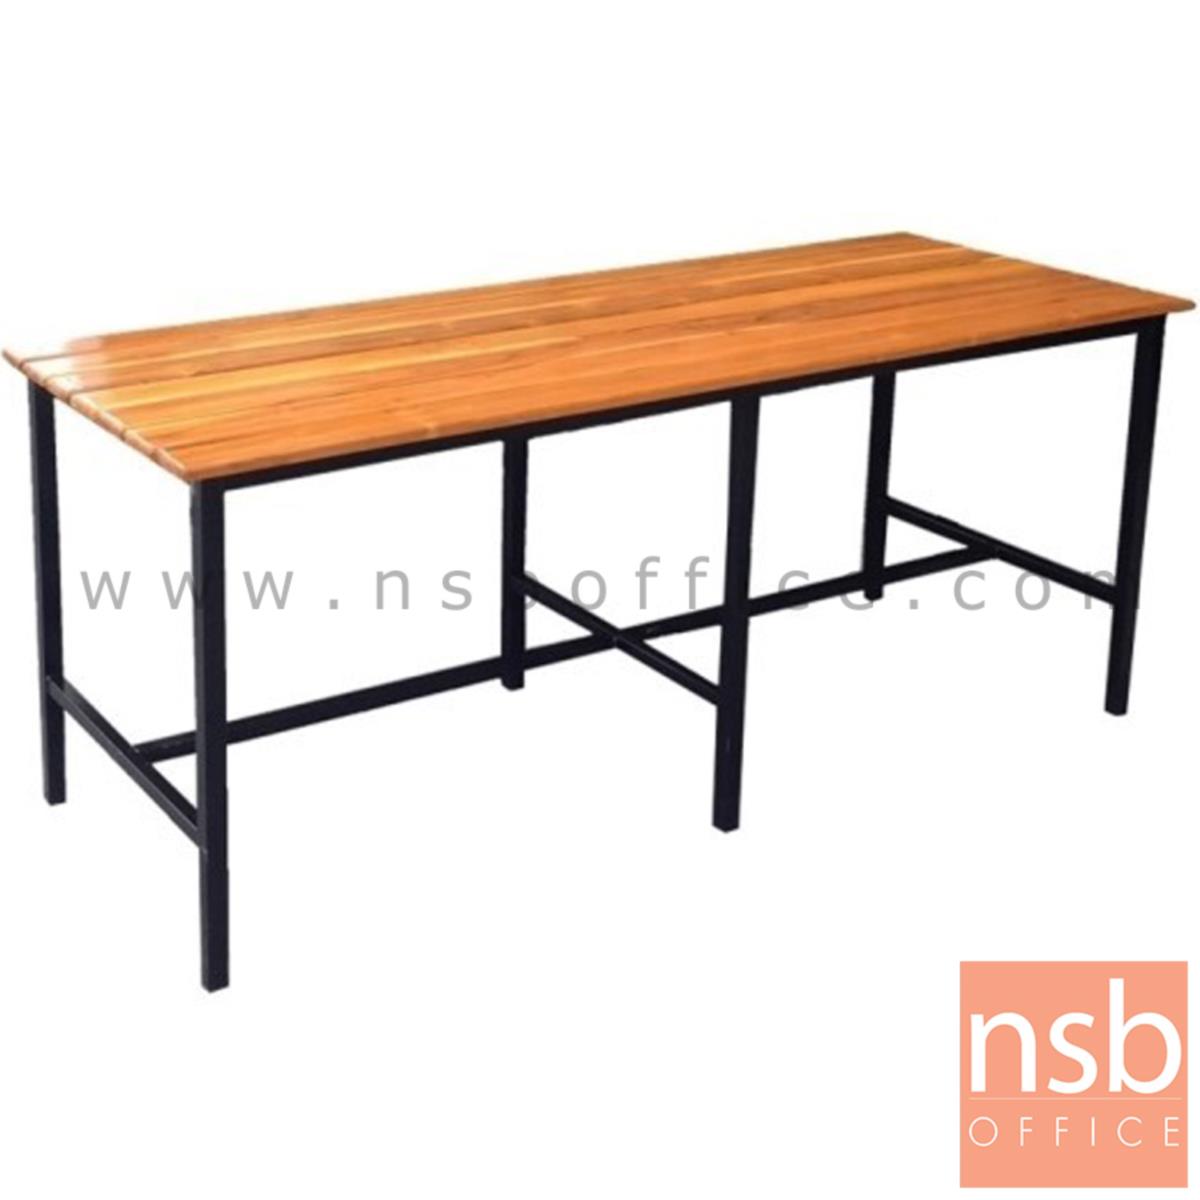 A17A086:โต๊ะโรงอาหารไม้สักตีระแนง รุ่น UTAH (ยูทาร์) ขนาด 180W cm. ขาเหล็ก